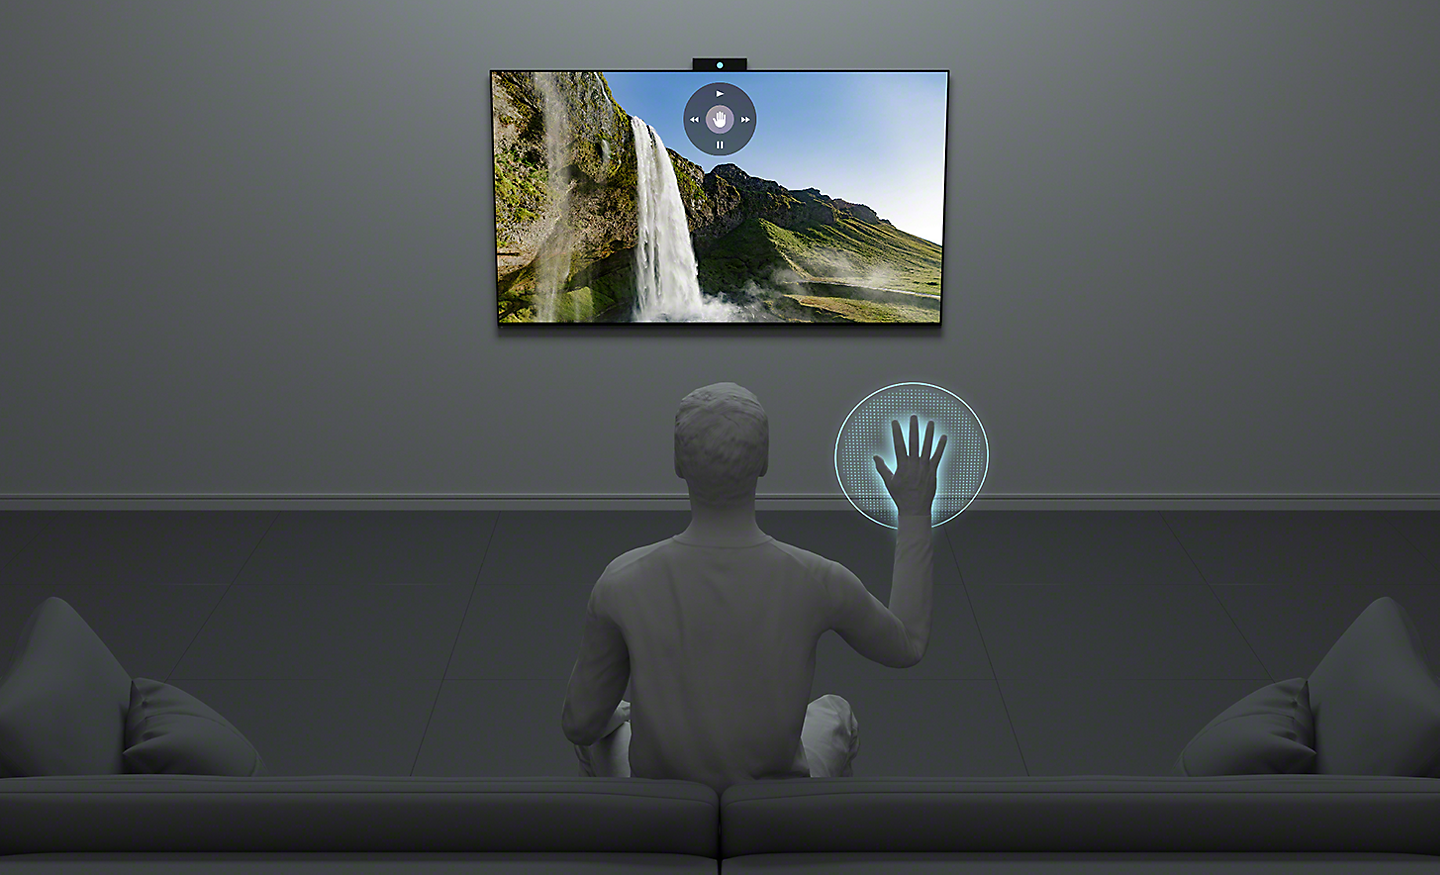 صورة إنسان يستخدم إيماءات اليد للتحكم في التلفزيون